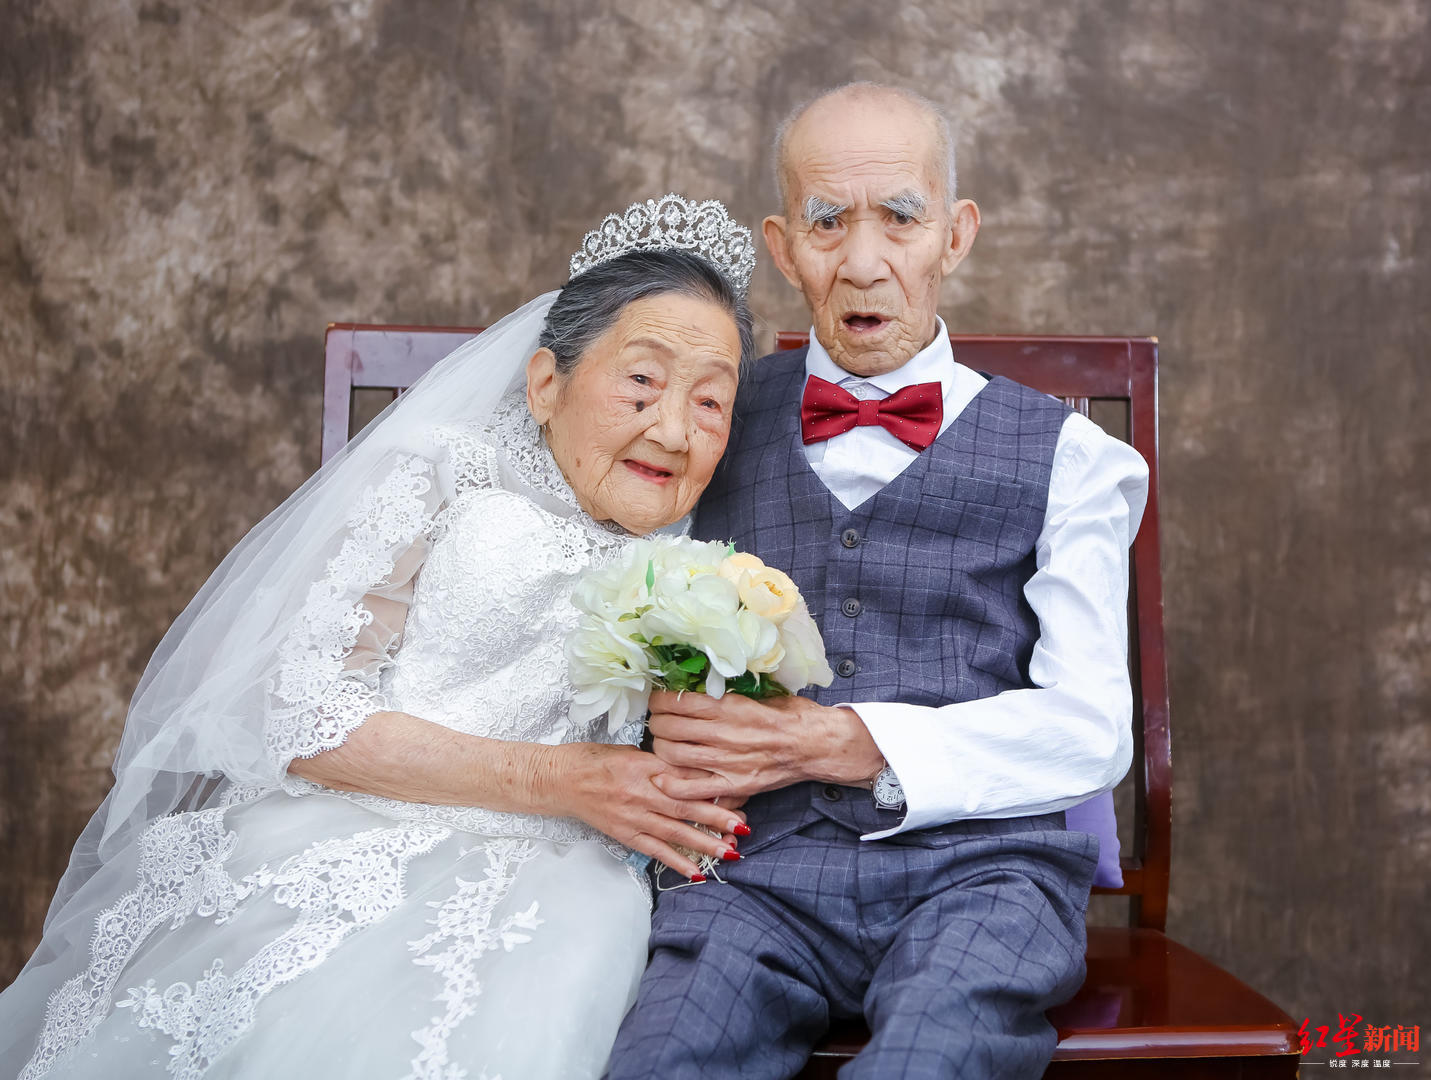 免费为老年夫妇拍婚纱照 用镜头记录甜蜜爱情-大河新闻